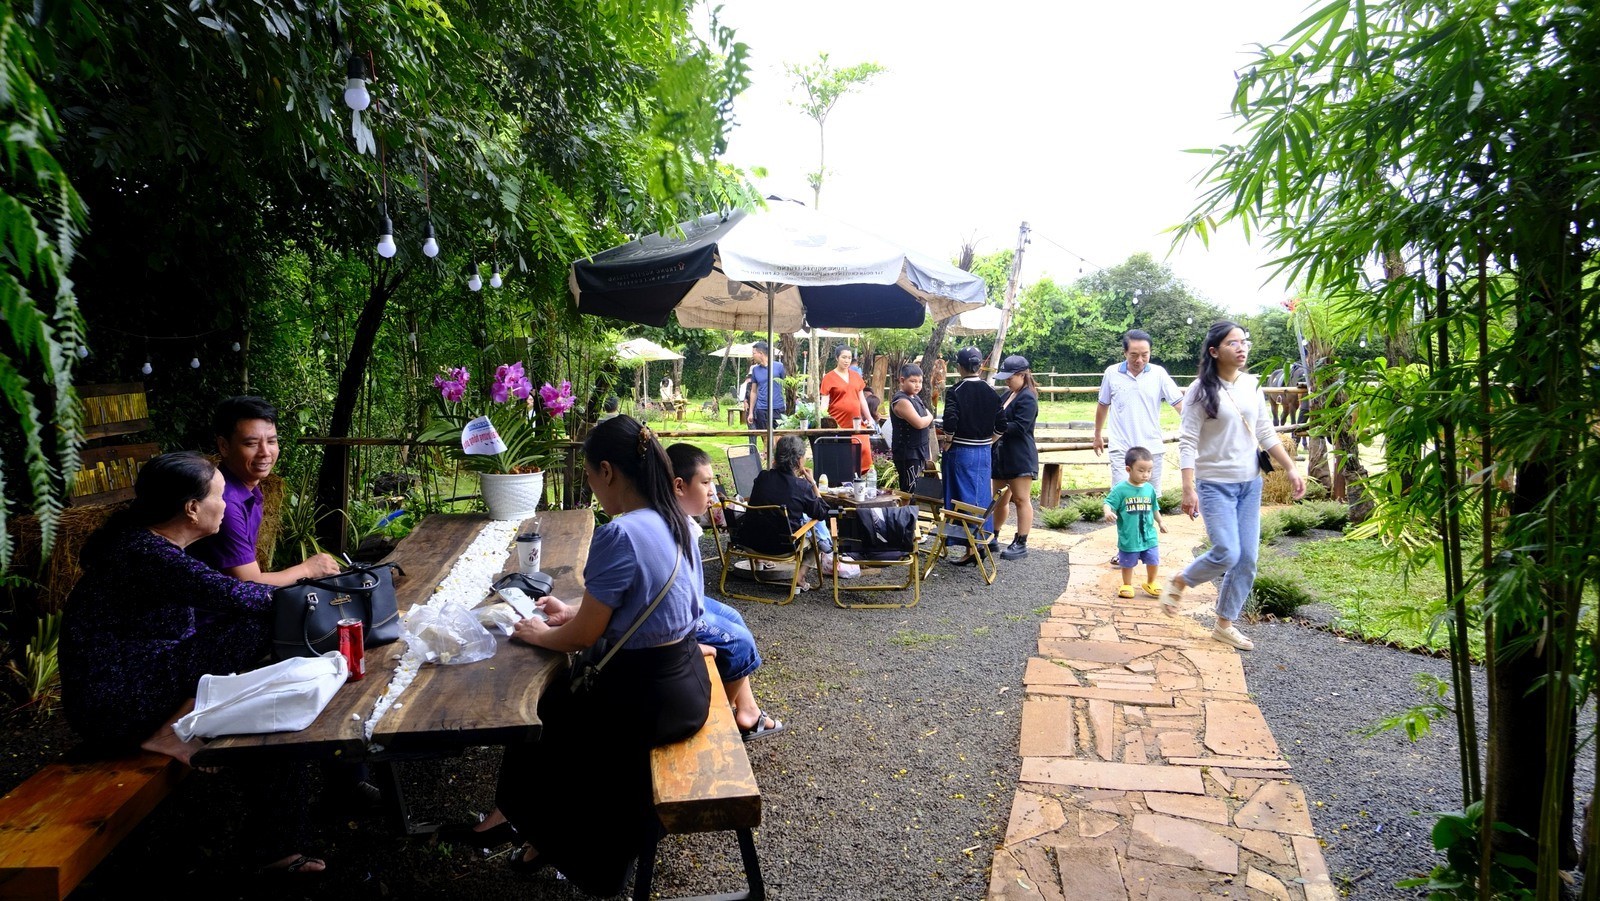 kham-pha-khu-trai-nghiem-horse-cafe-garden-10-1710773401.jpg